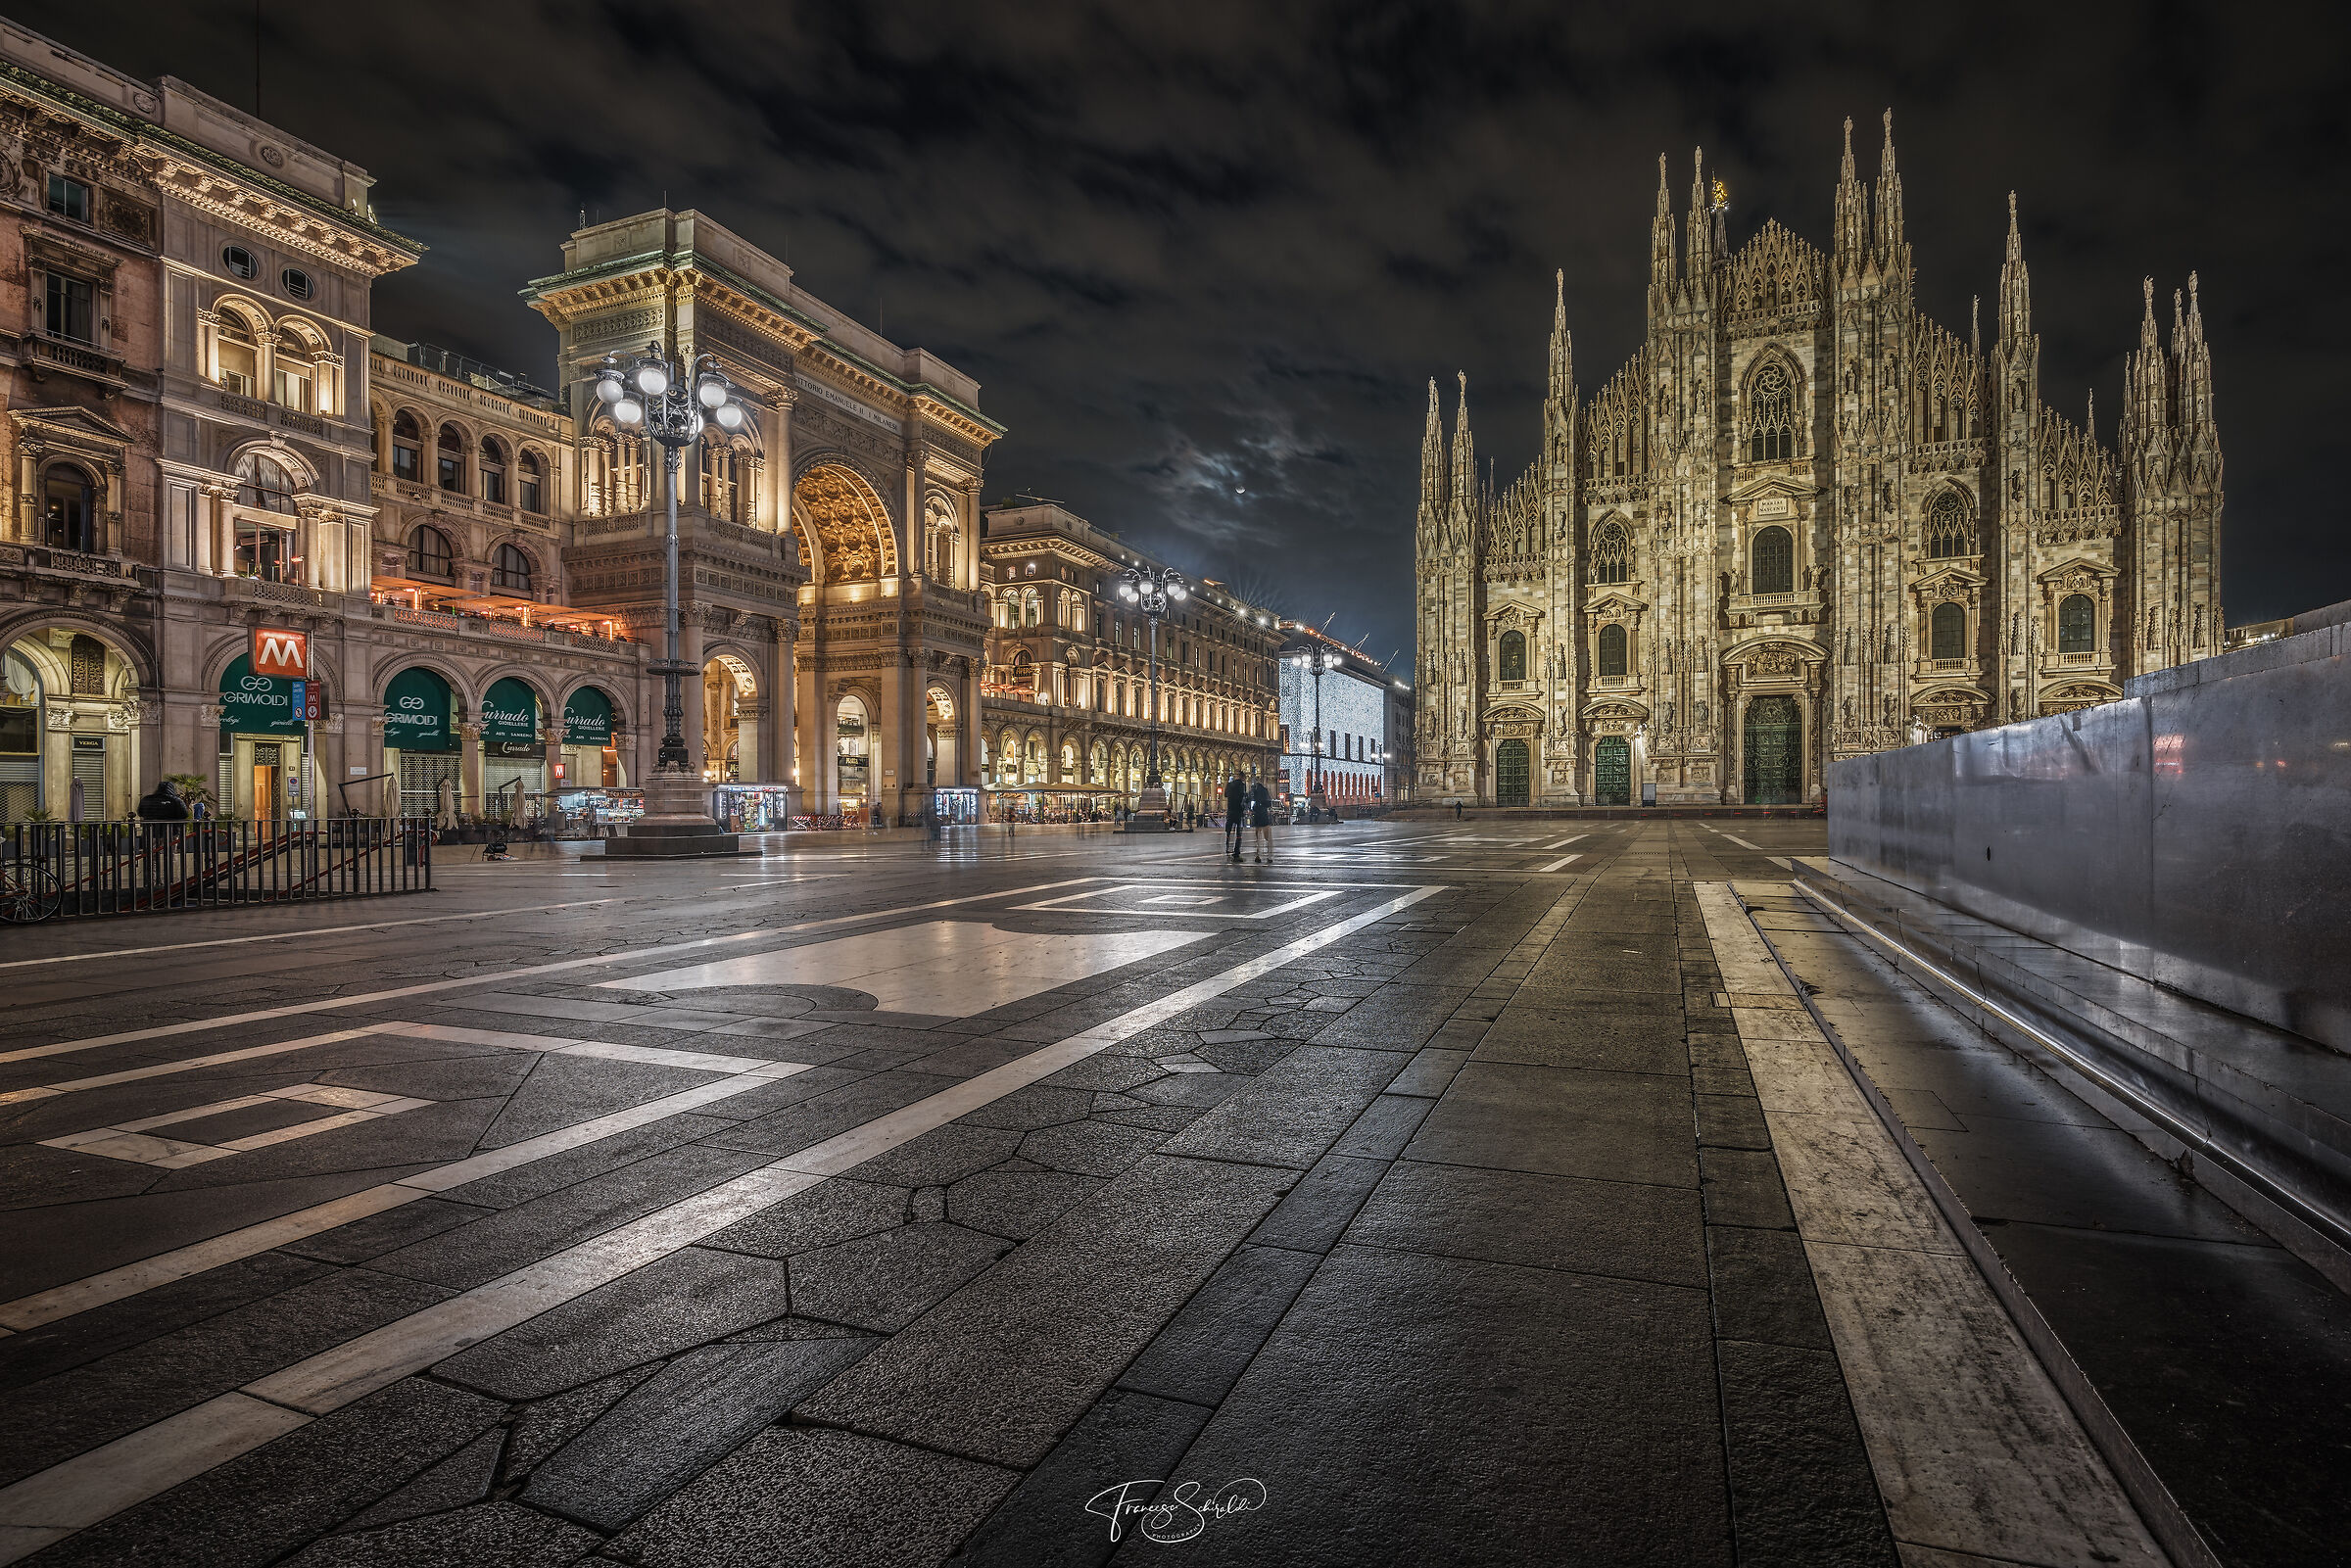 Il magnifico Duomo di Milano...